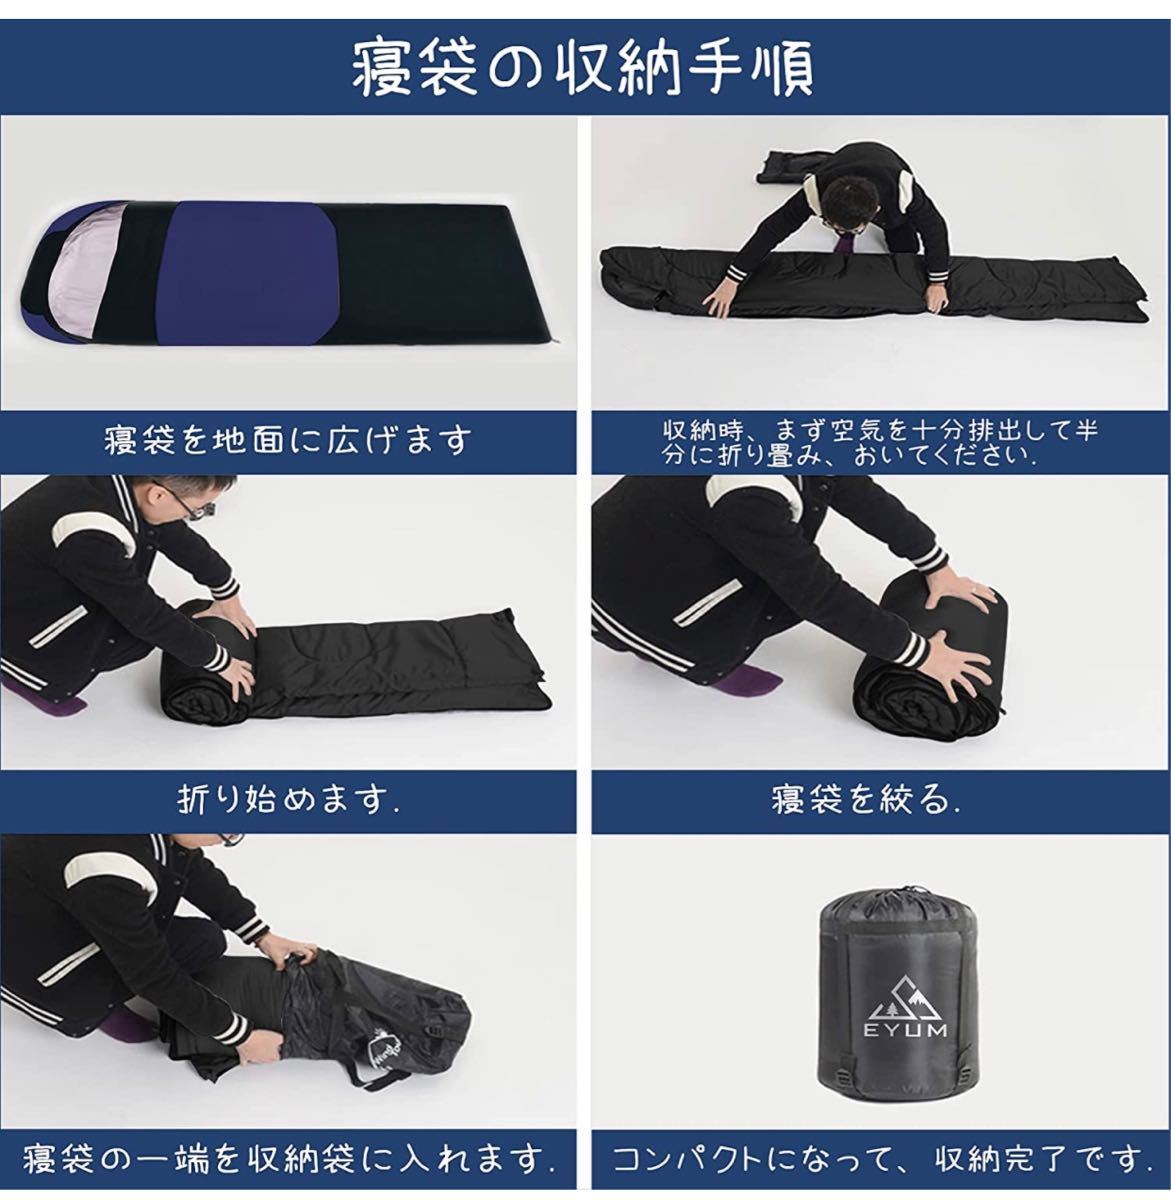 寝袋 シュラフ 封筒型 軽量 超暖かい 210T防水 コンパクト 収納袋